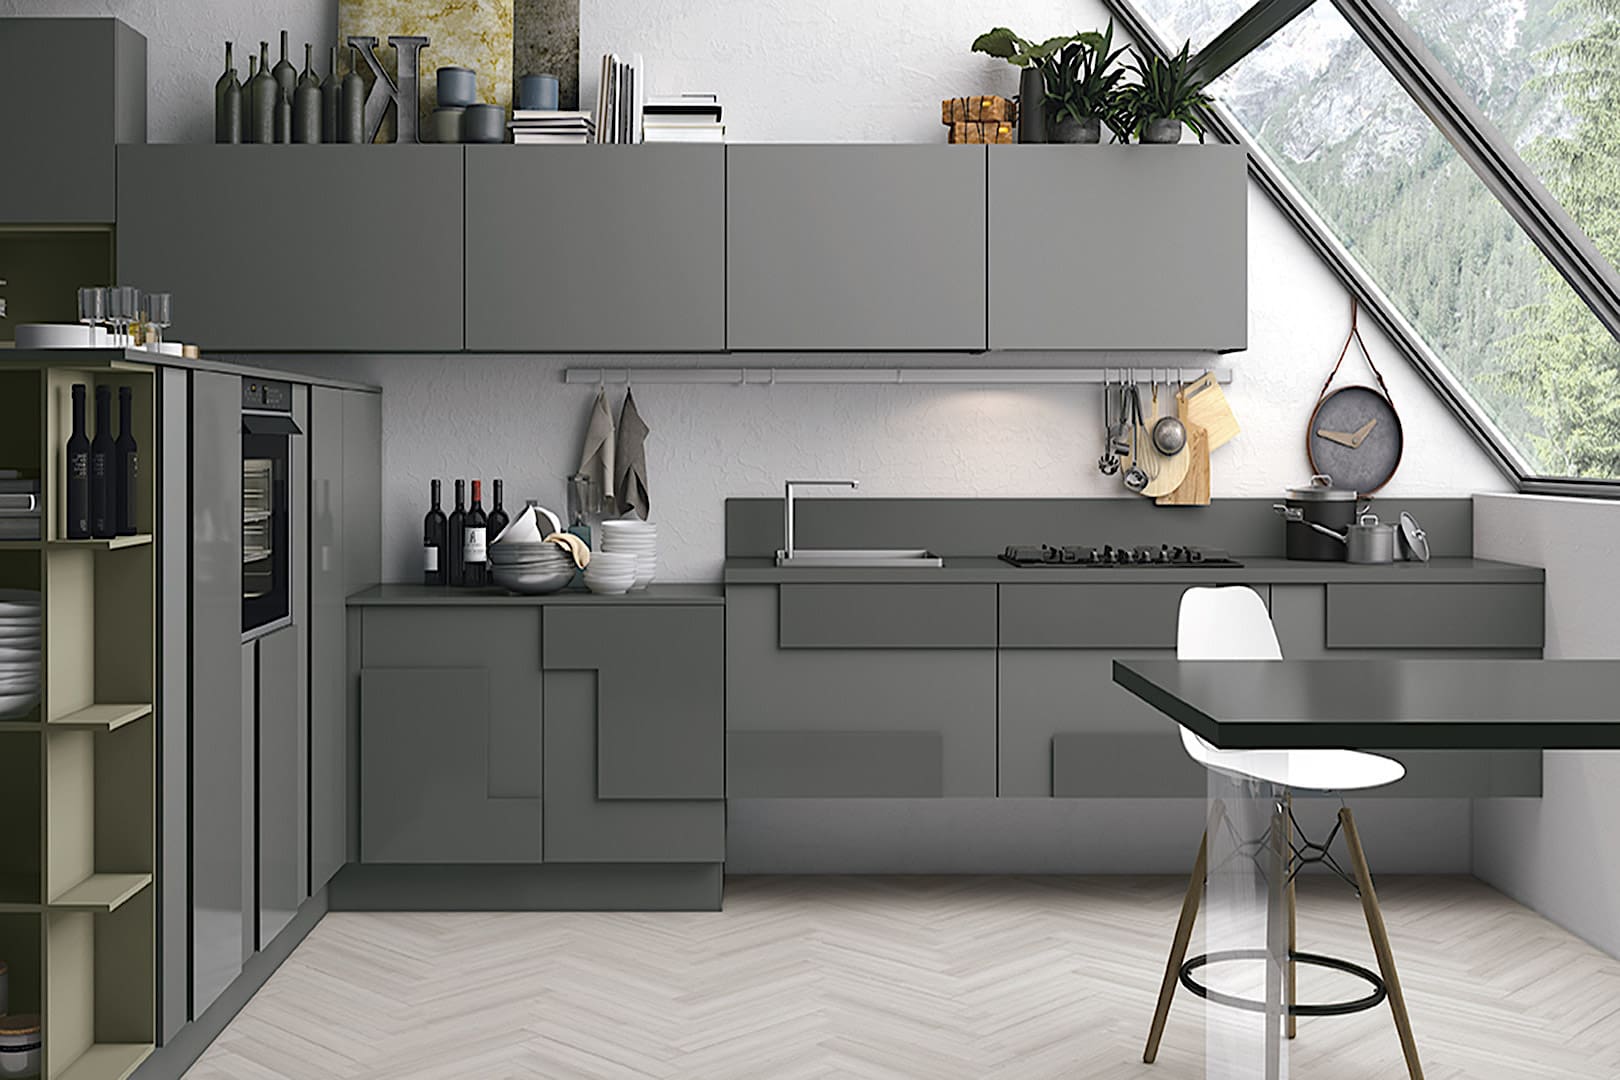 Современная концепция минимализма предлагает огромное количество стильных вариантов отделки фасадов для кухонной мебели